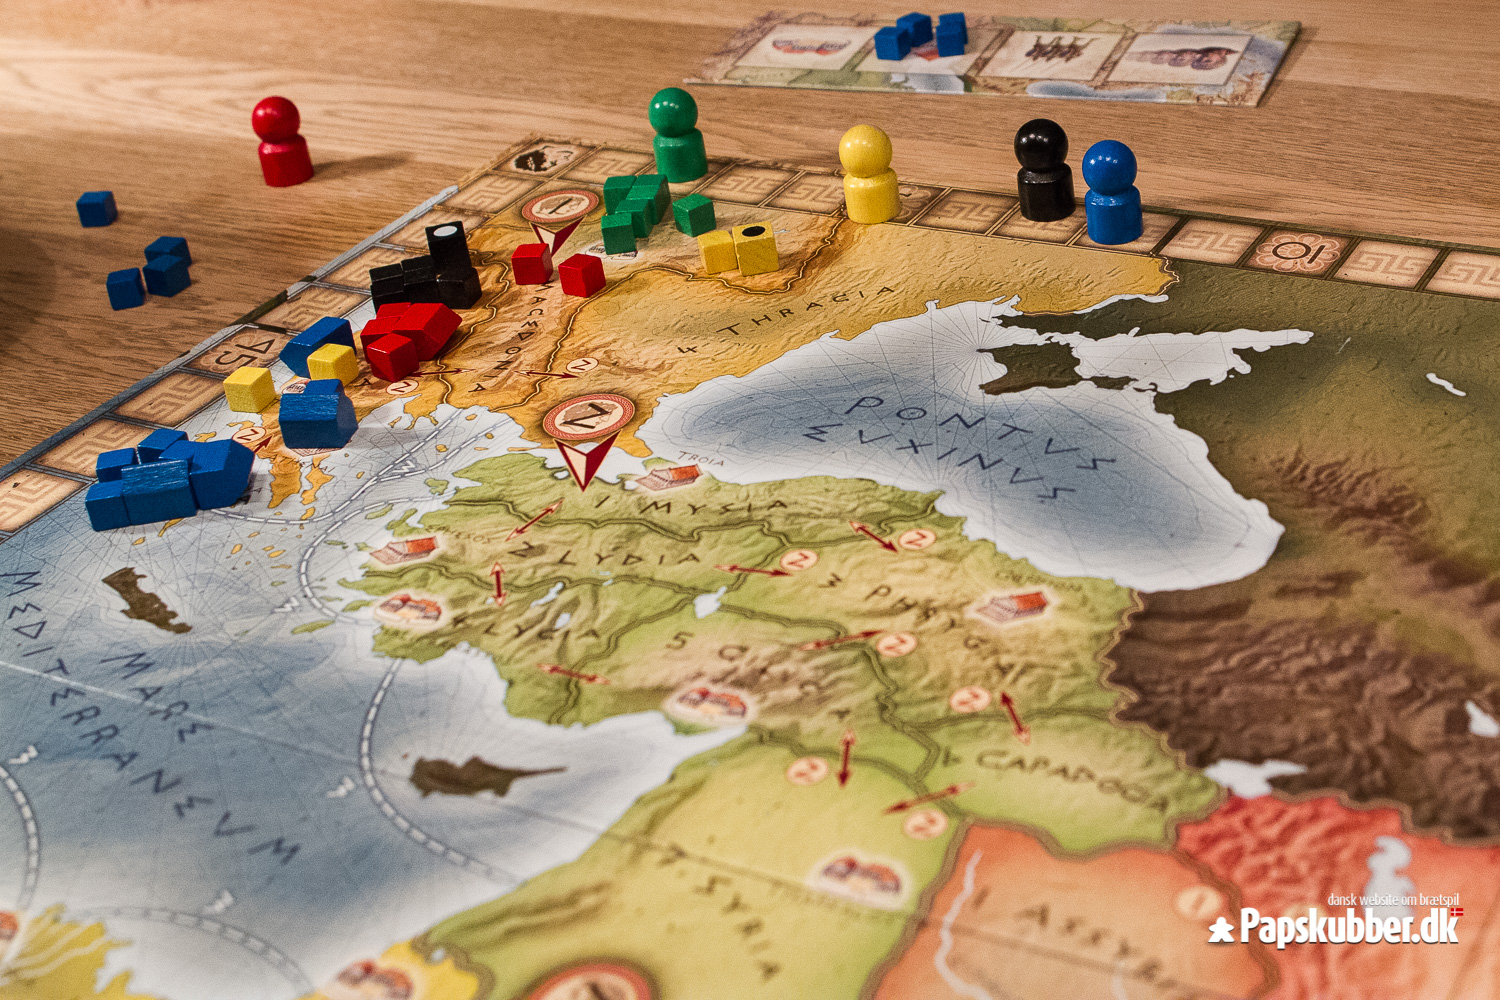 Spillerne scorer point ved at bygge byer, opføre templer og være den dominerende militærmagt.